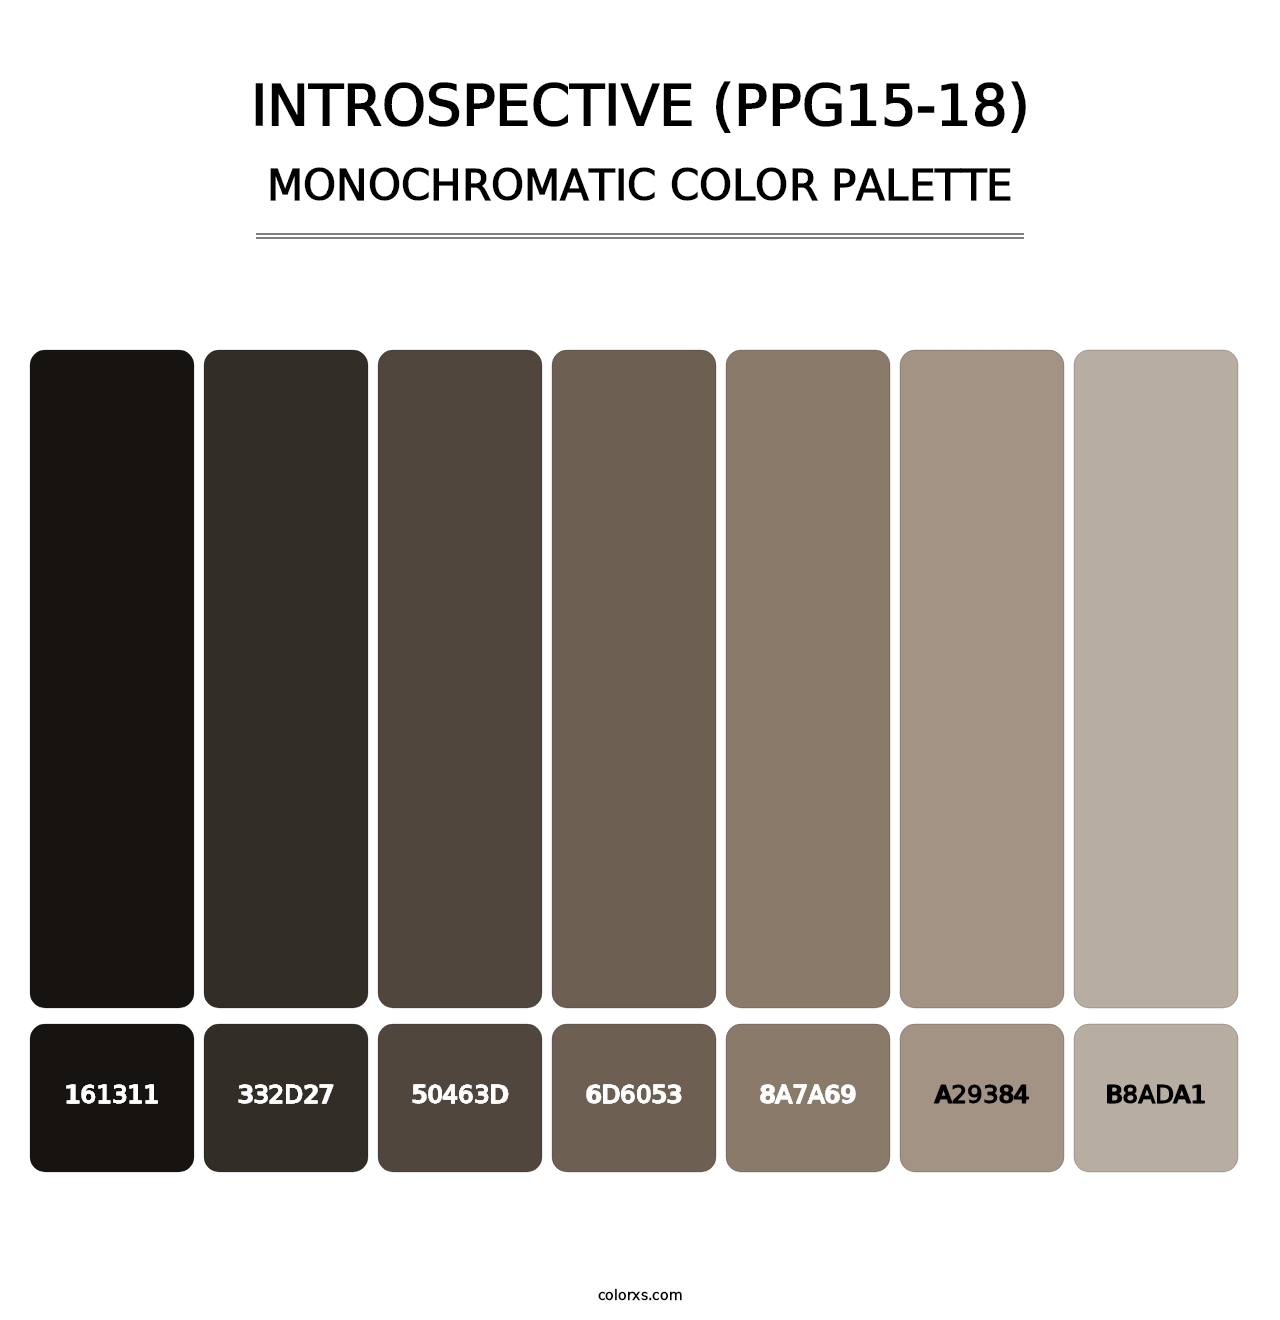 Introspective (PPG15-18) - Monochromatic Color Palette